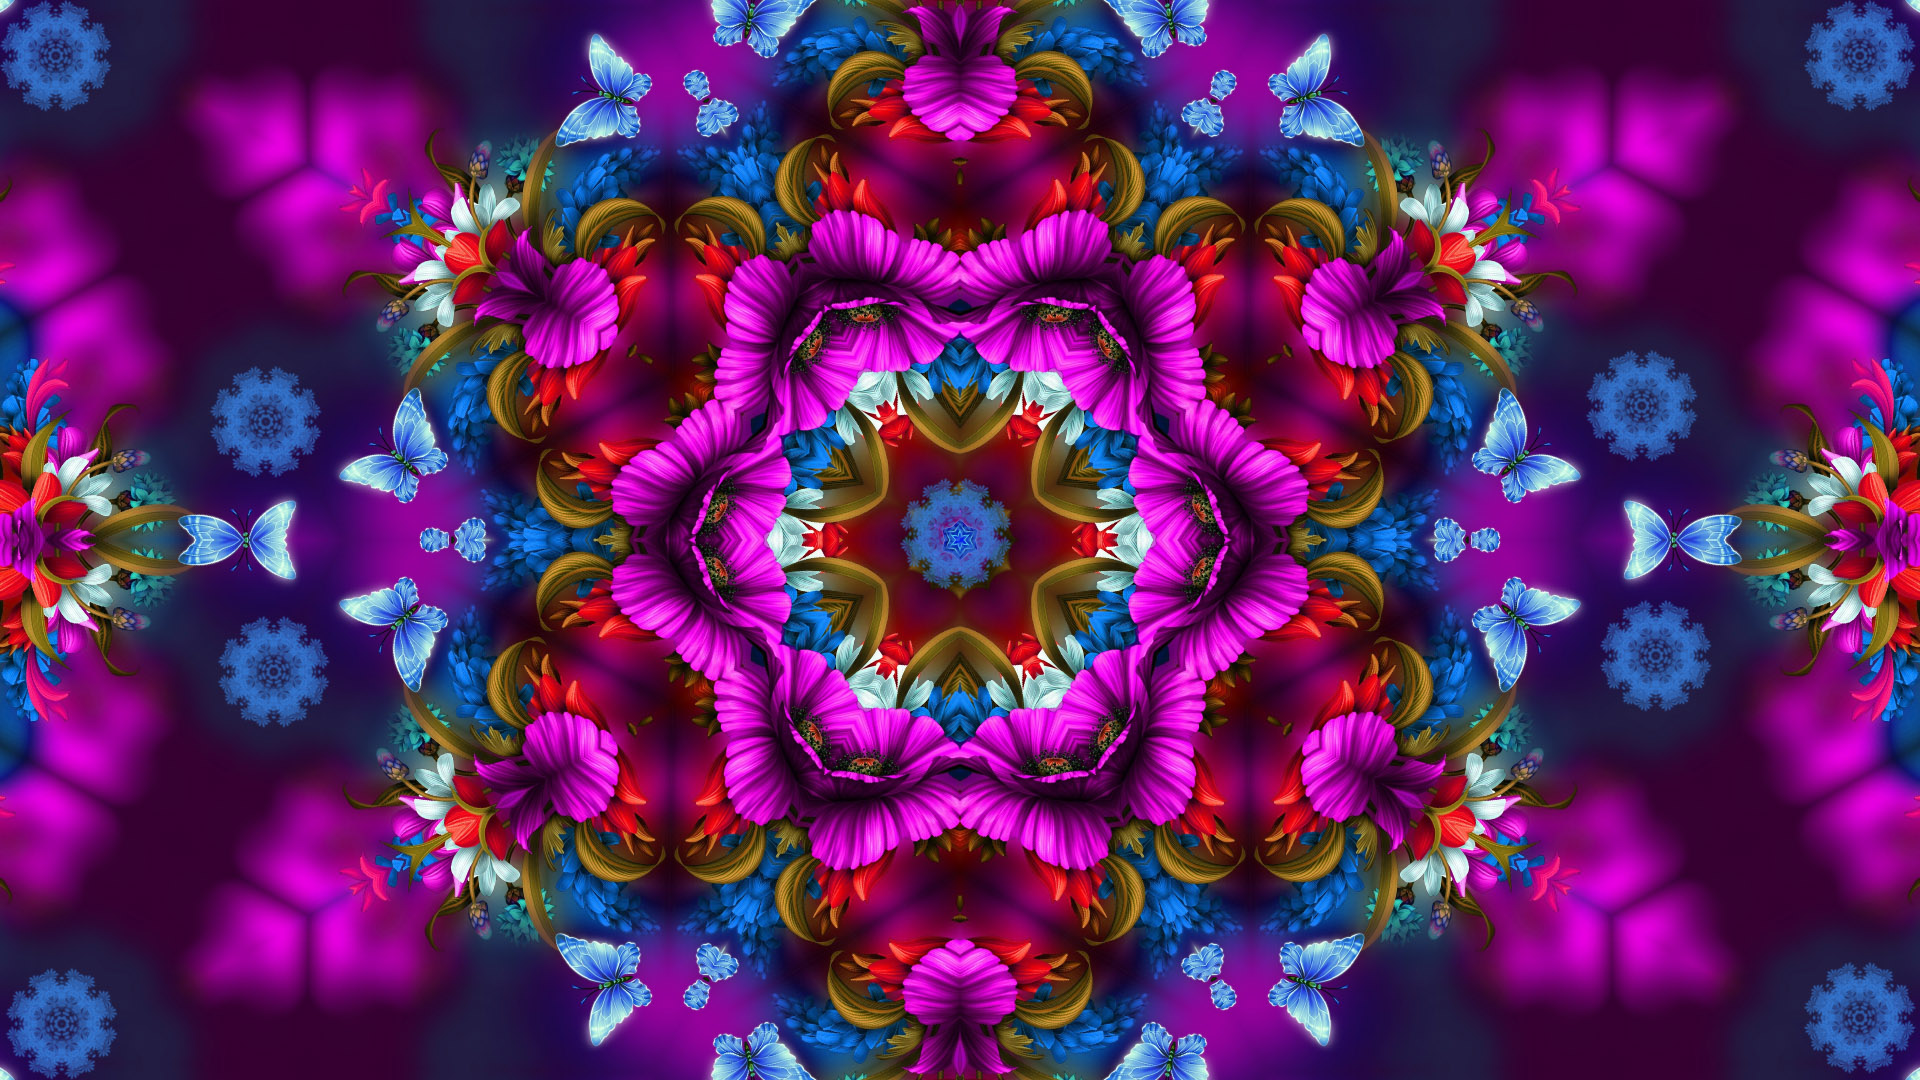 Artistic Butterfly Colors Digital Art Flower Pattern 1920x1080